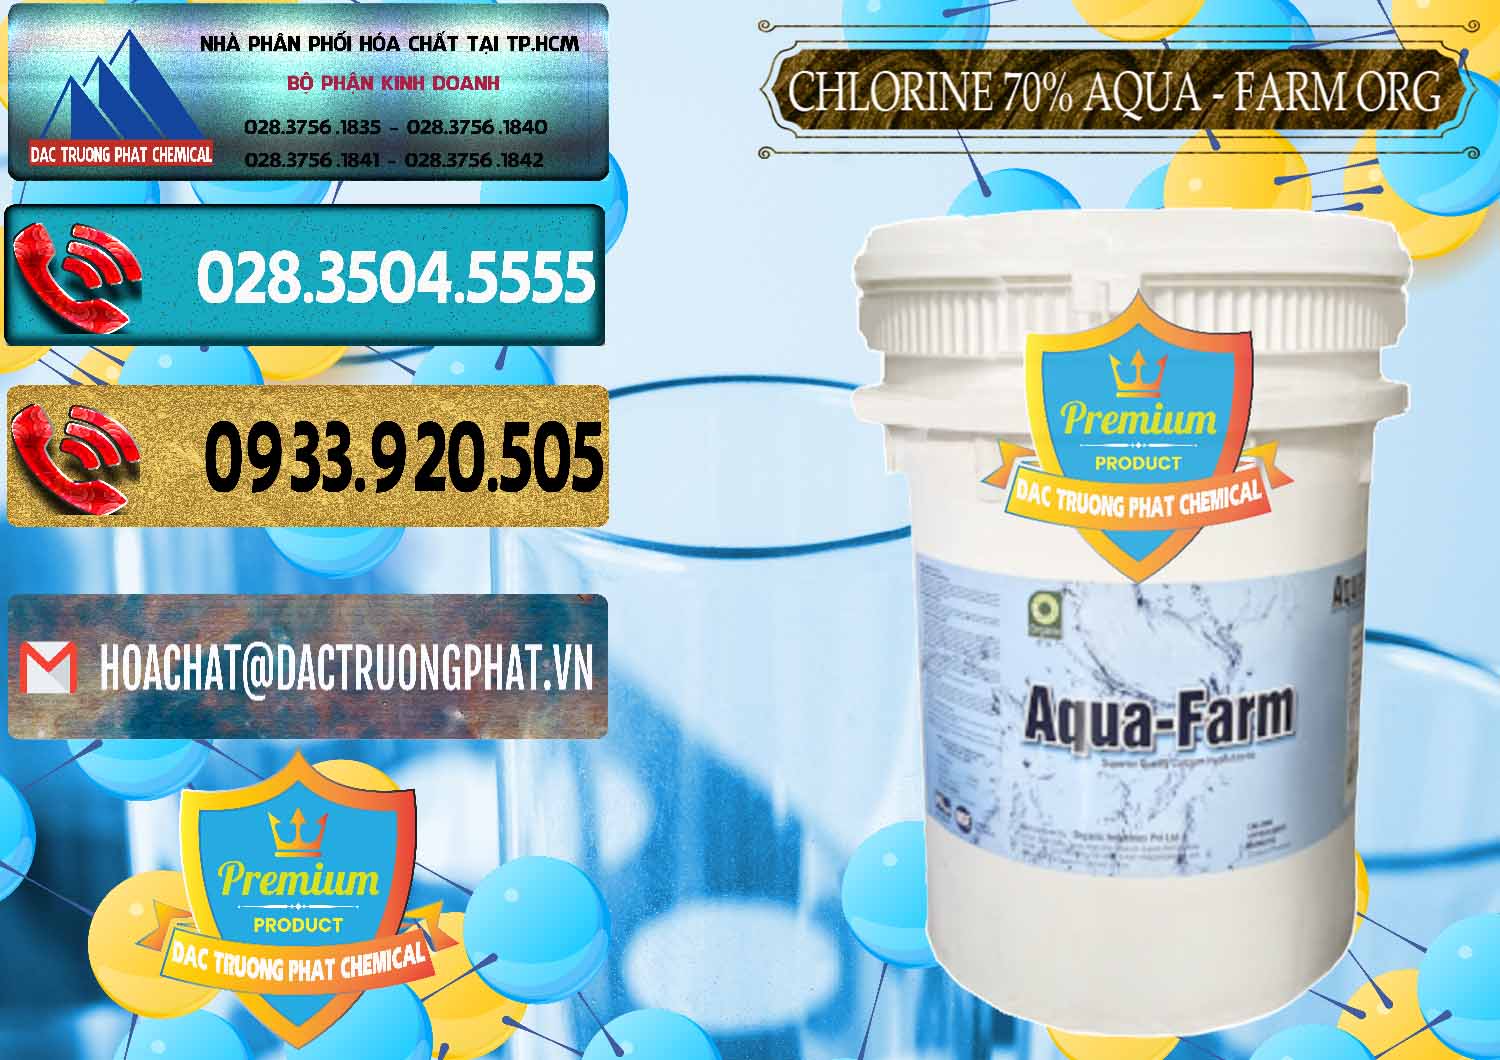 Đơn vị chuyên bán _ cung cấp Chlorine – Clorin 70% Aqua - Farm ORG Organic Ấn Độ India - 0246 - Chuyên cung cấp - nhập khẩu hóa chất tại TP.HCM - hoachatdetnhuom.com